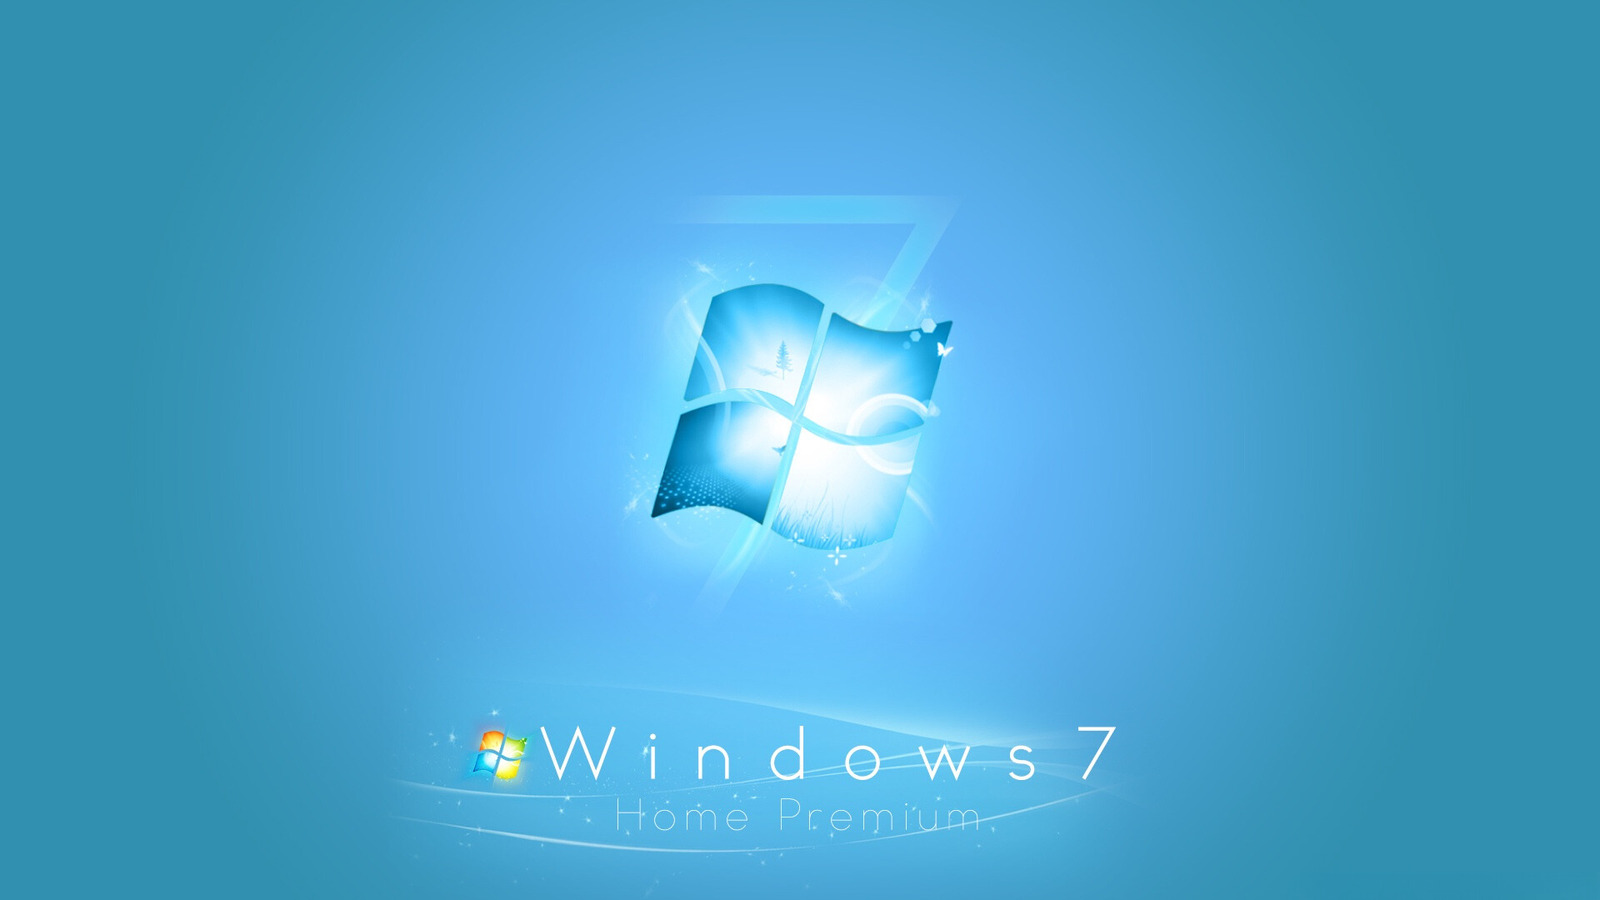 R download windows. Виндовс 7. Виндовс 7 рабочий стол. Обои в стиле виндовс 7. Классические обои Windows 7.